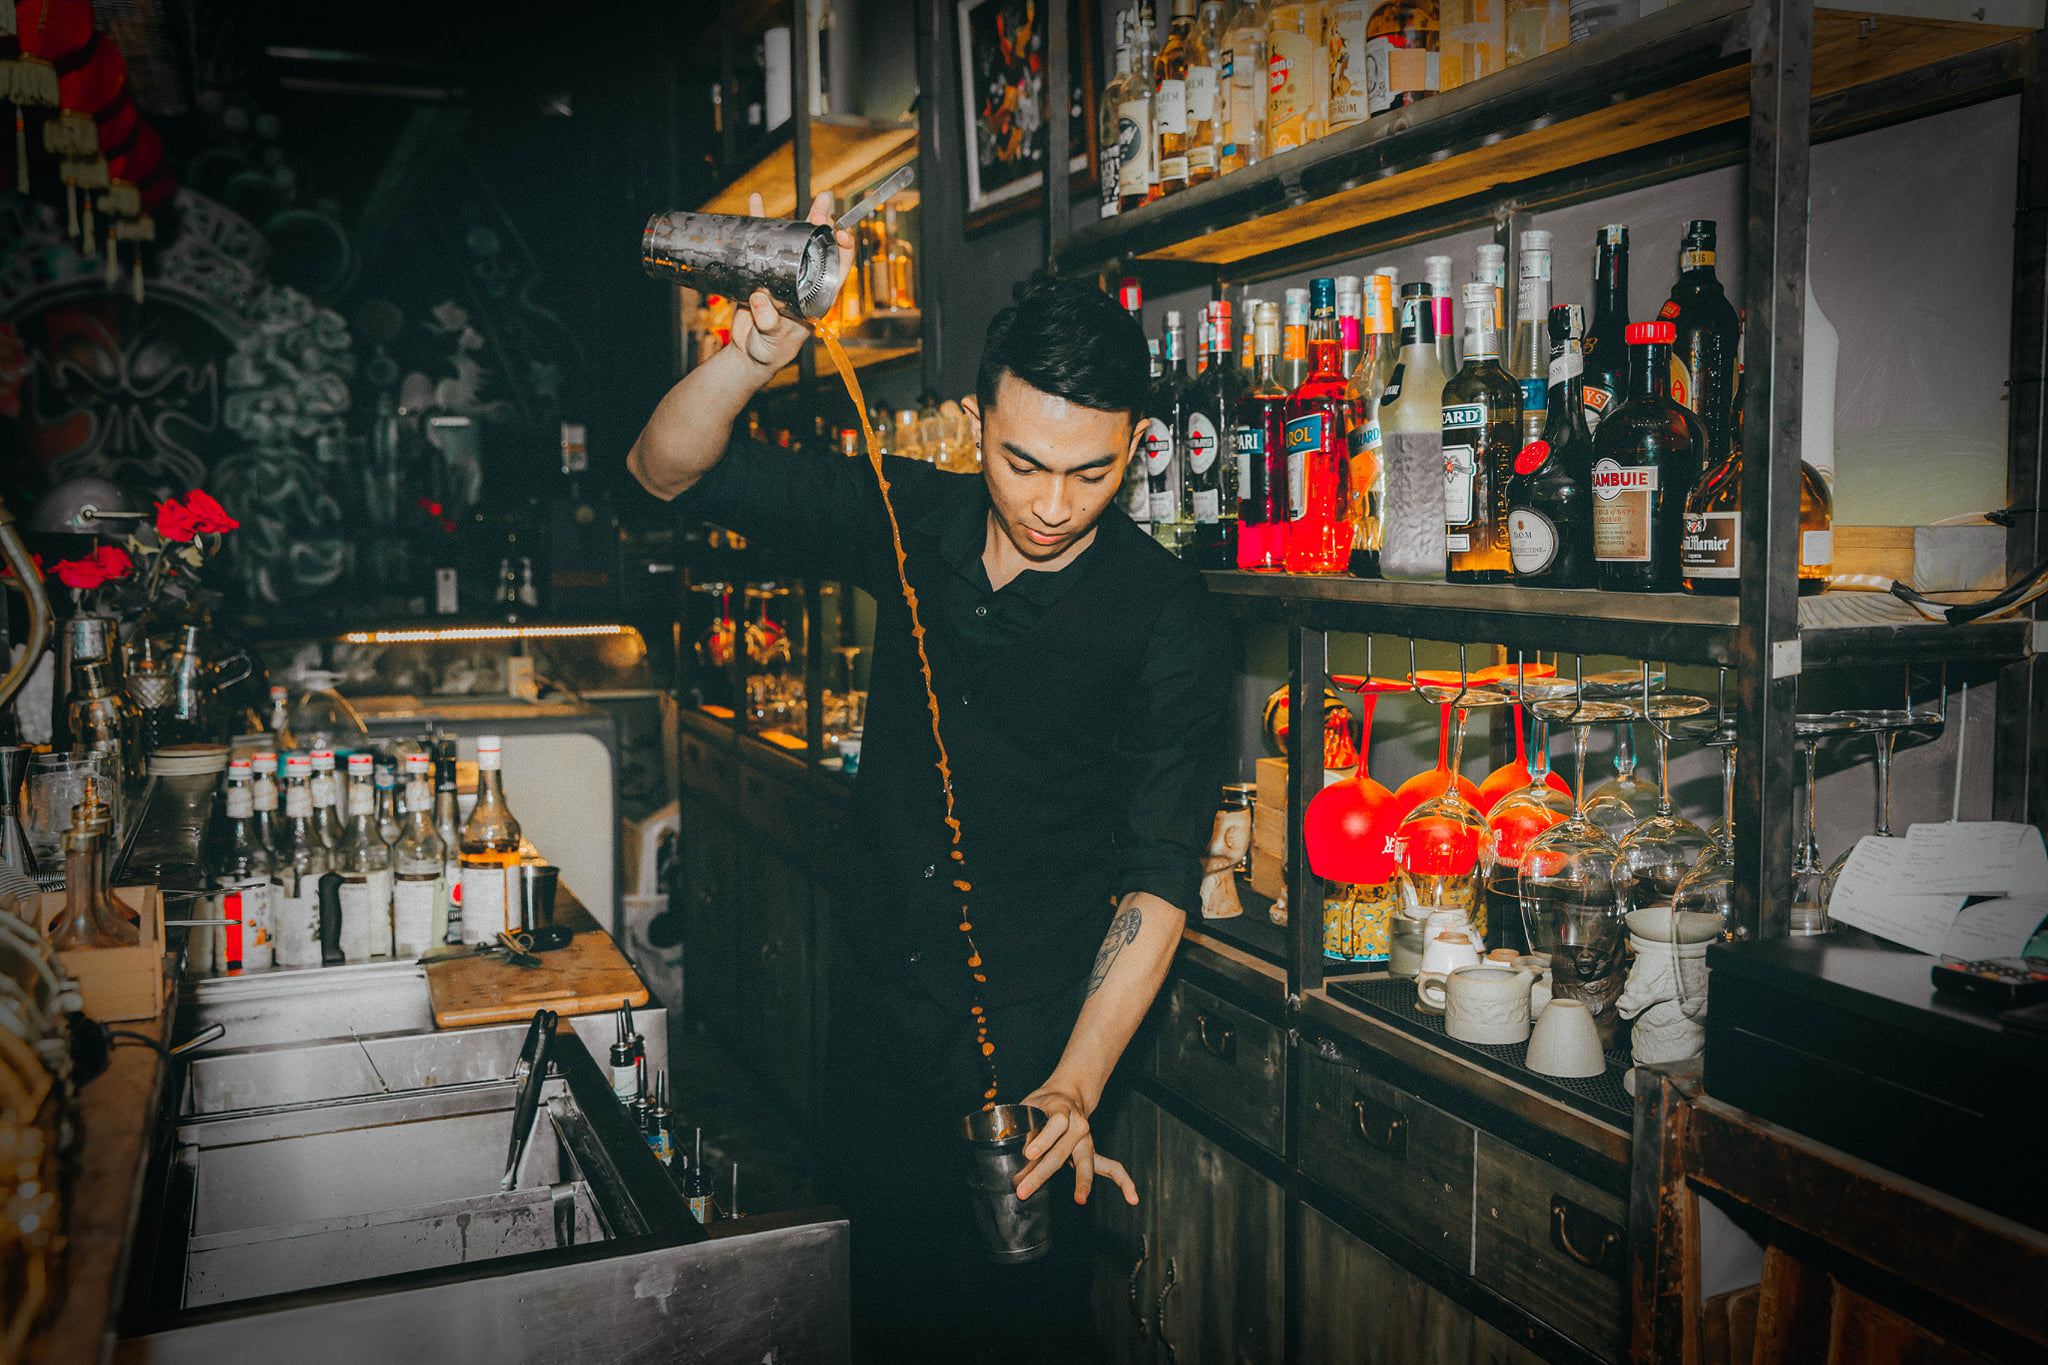 Qilin bartender